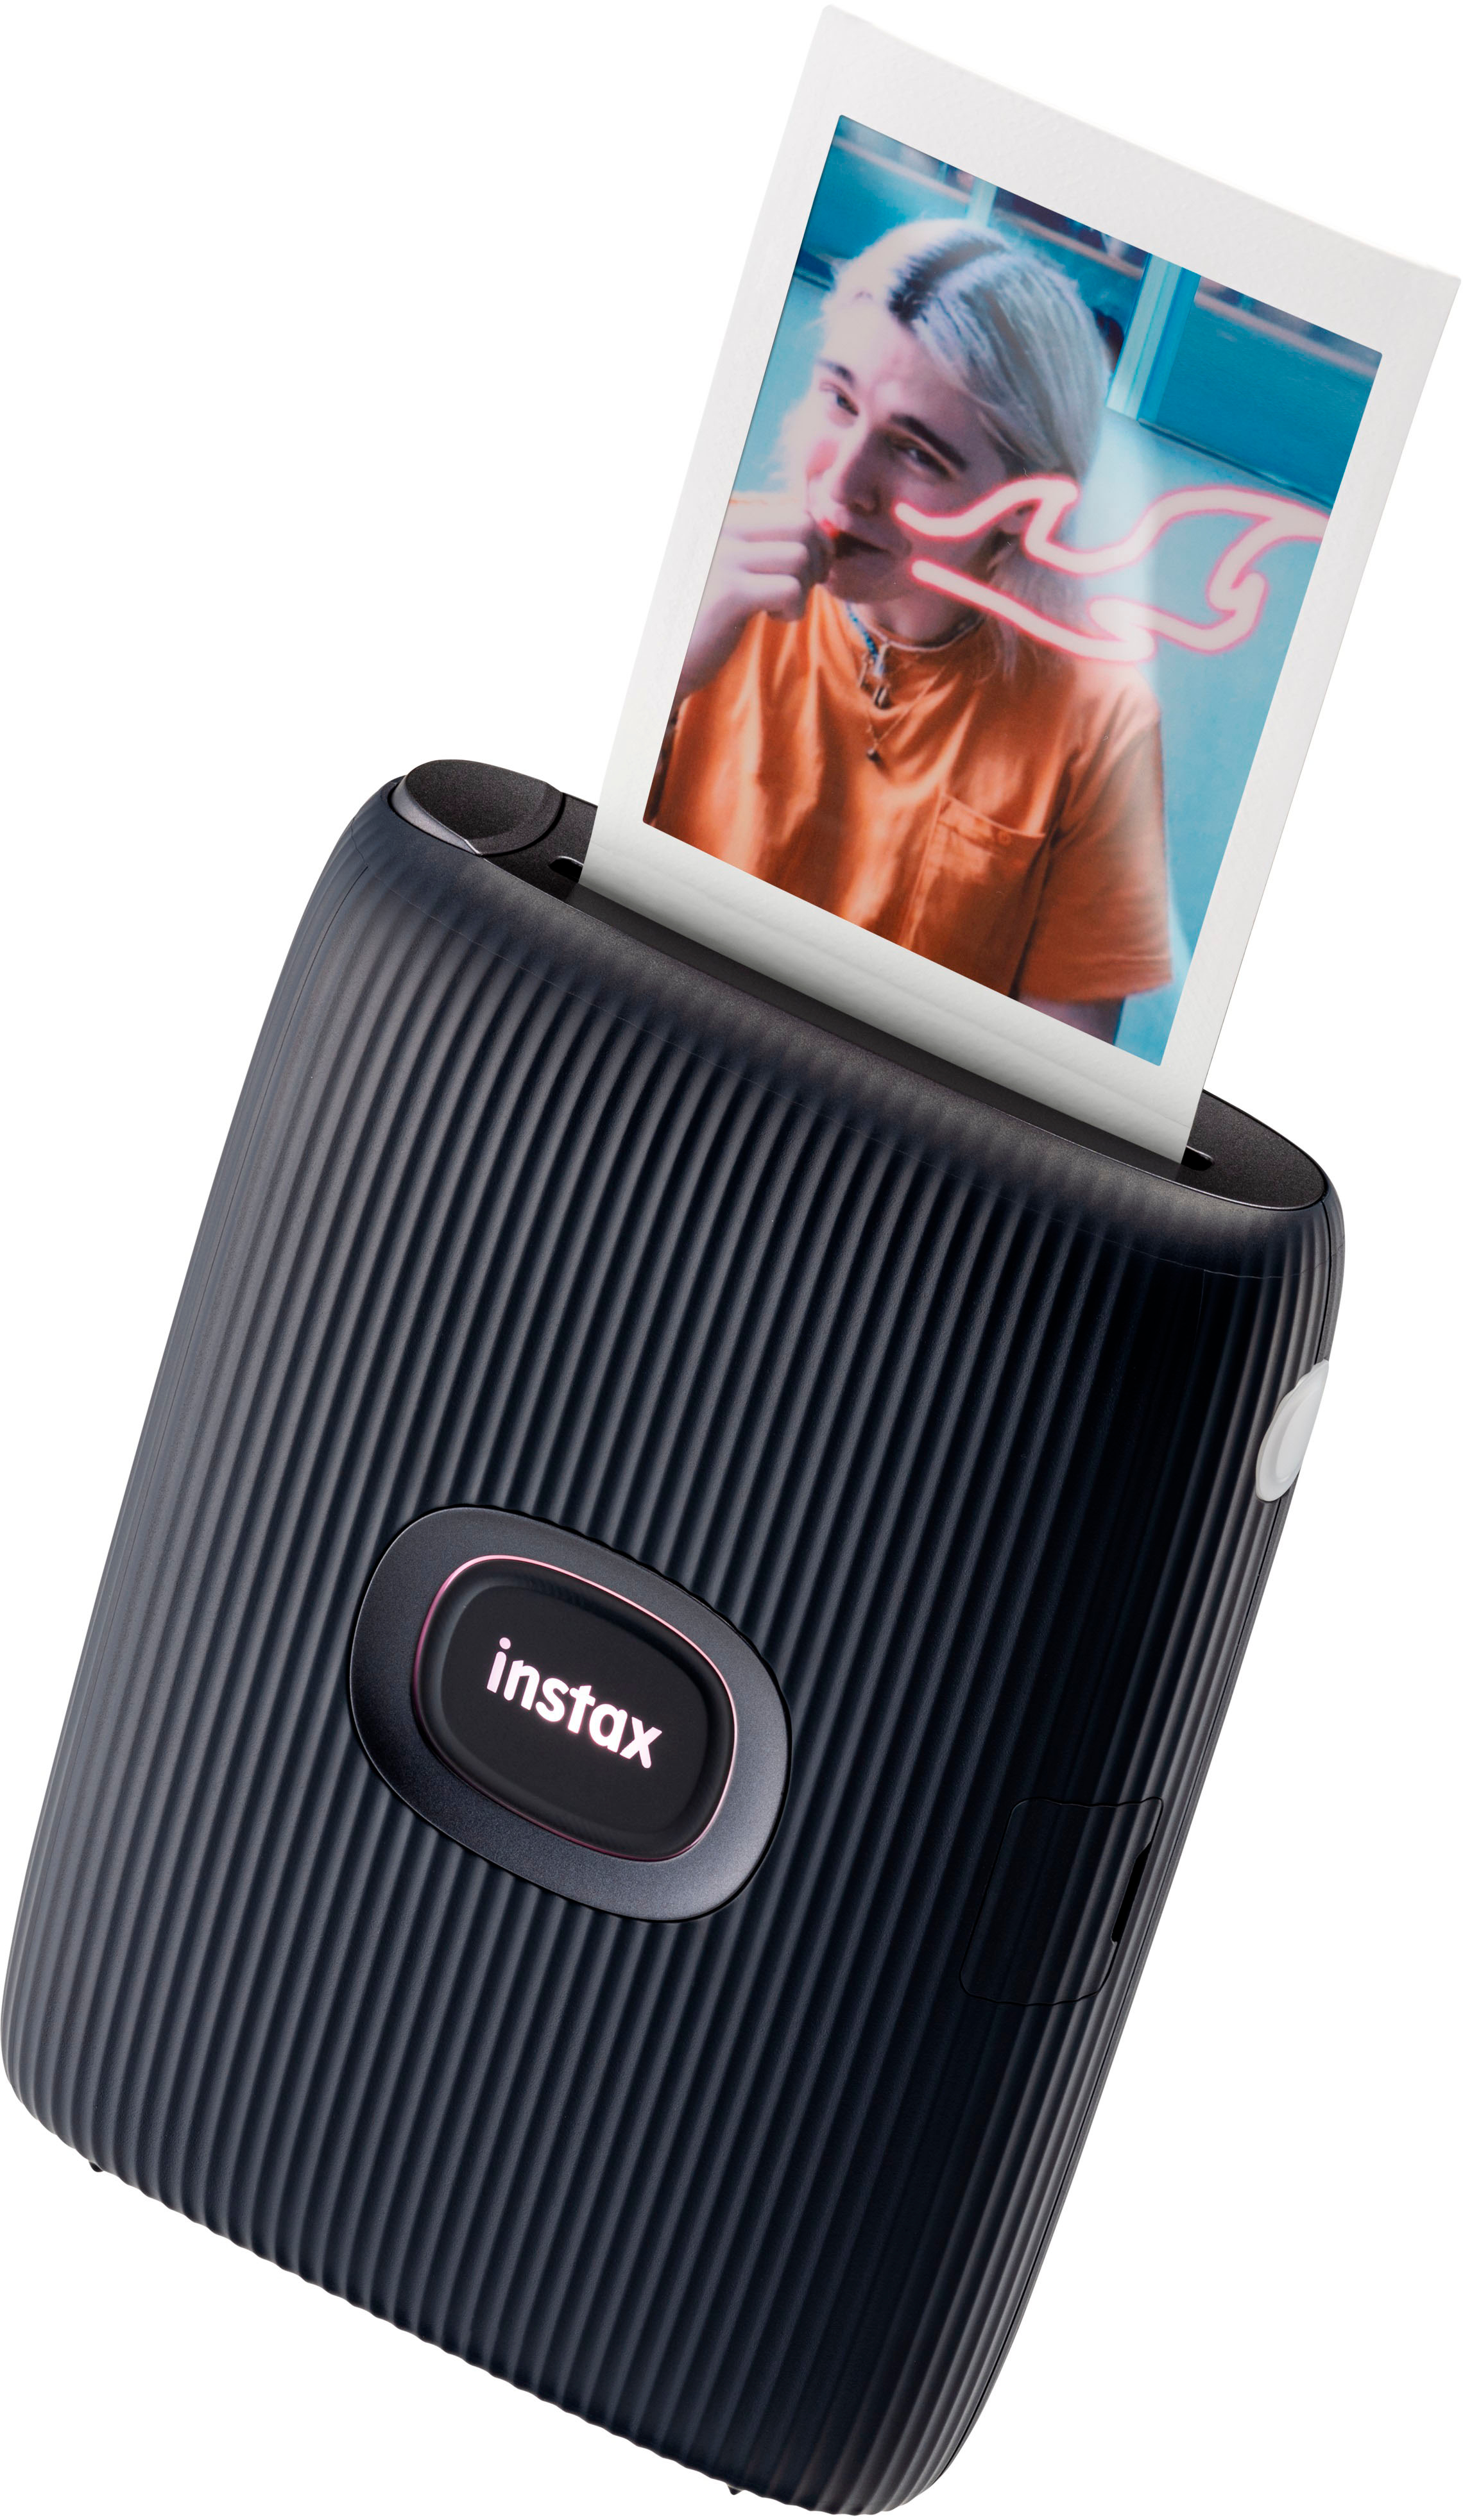 Fujifilm introduces Instax Mini Link 2 printer for smartphones - Photofocus